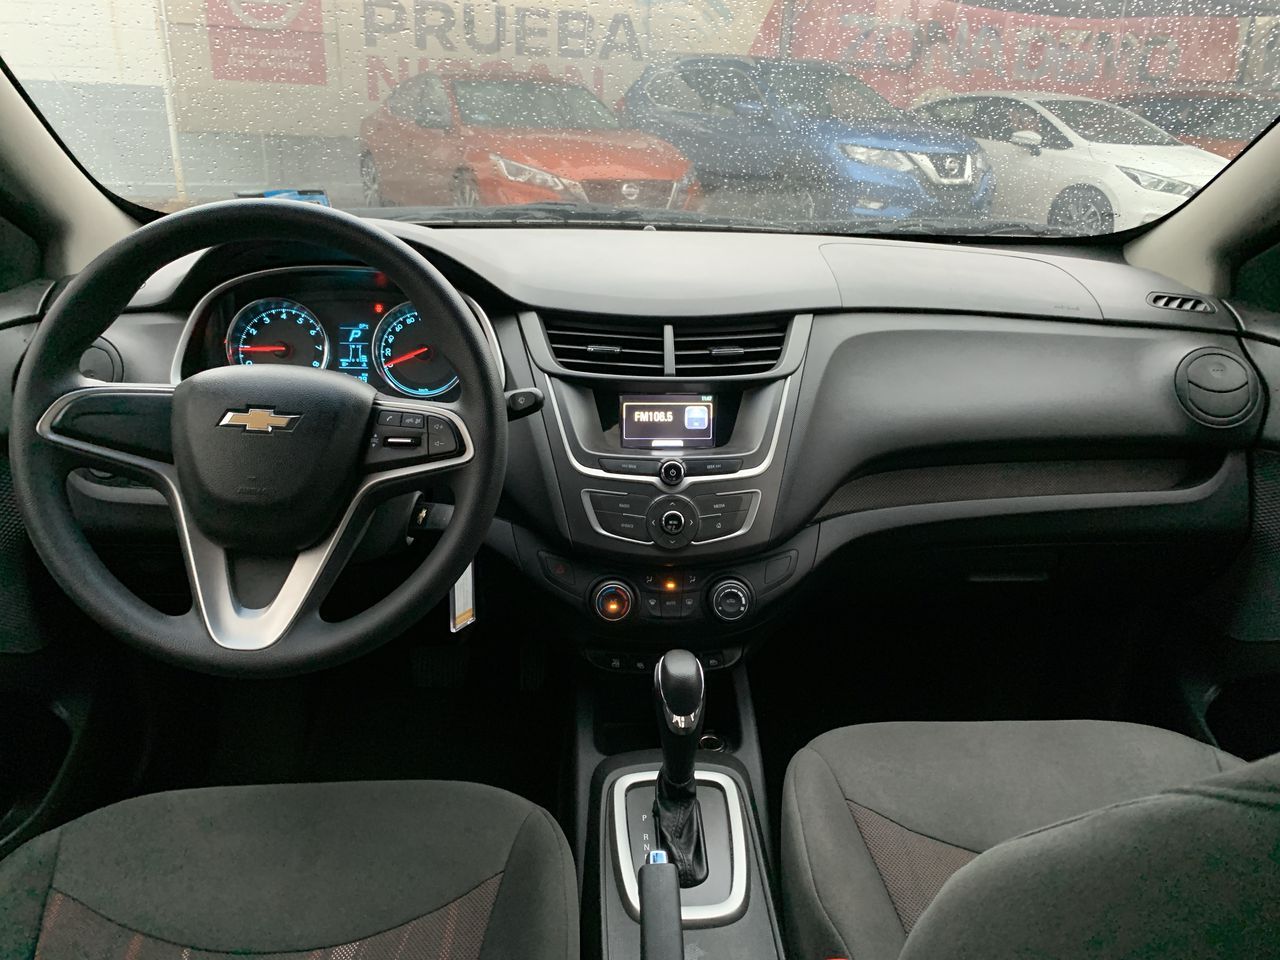 Chevrolet Aveo 2019